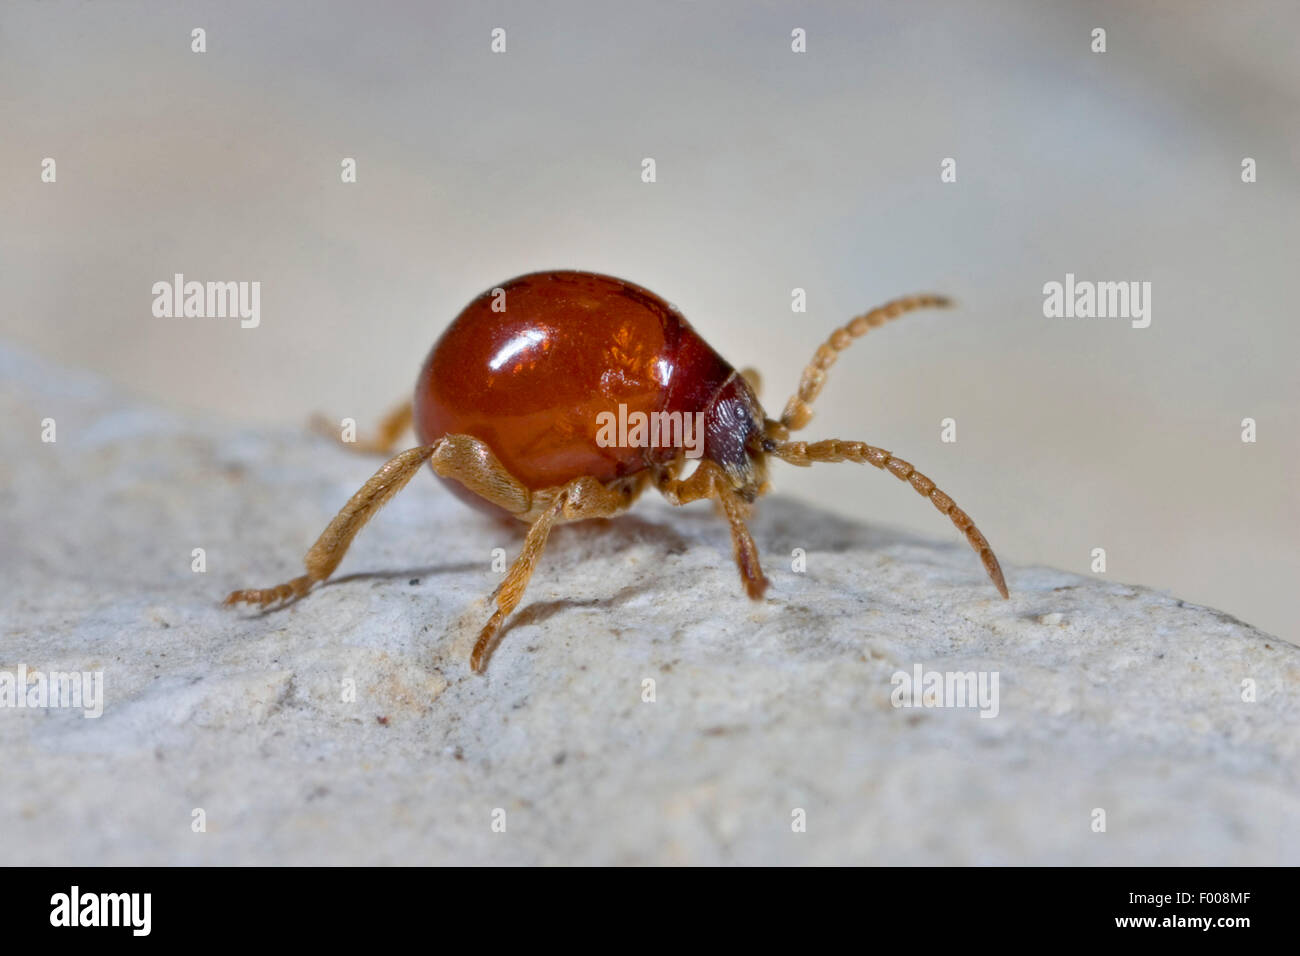 Death watch beetle immagini e fotografie stock ad alta risoluzione - Alamy